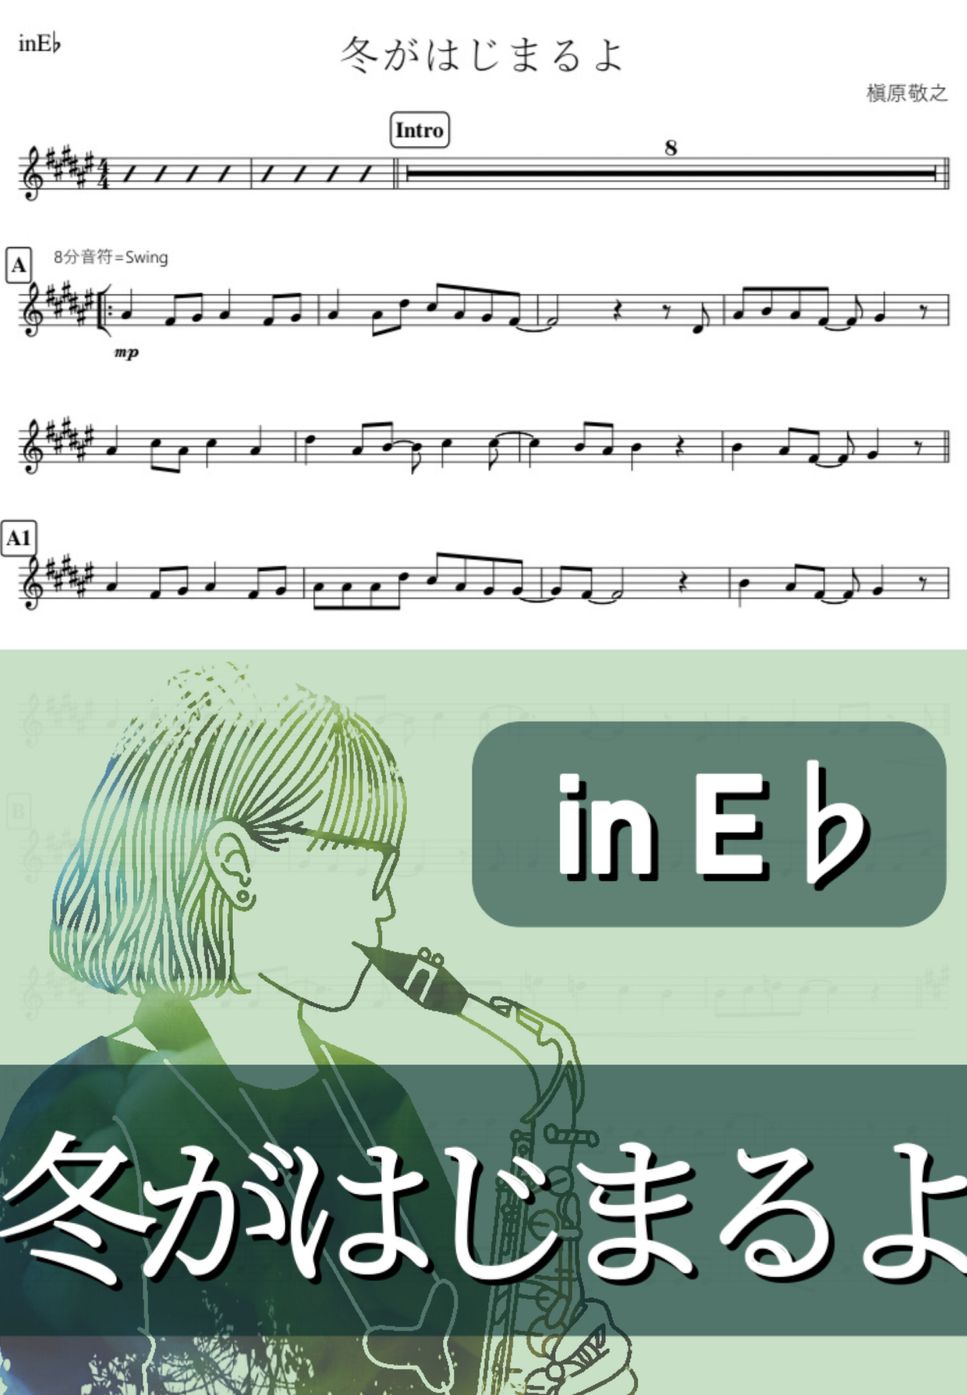 槇原敬之 - 冬がはじまるよ (E♭) by kanamusic